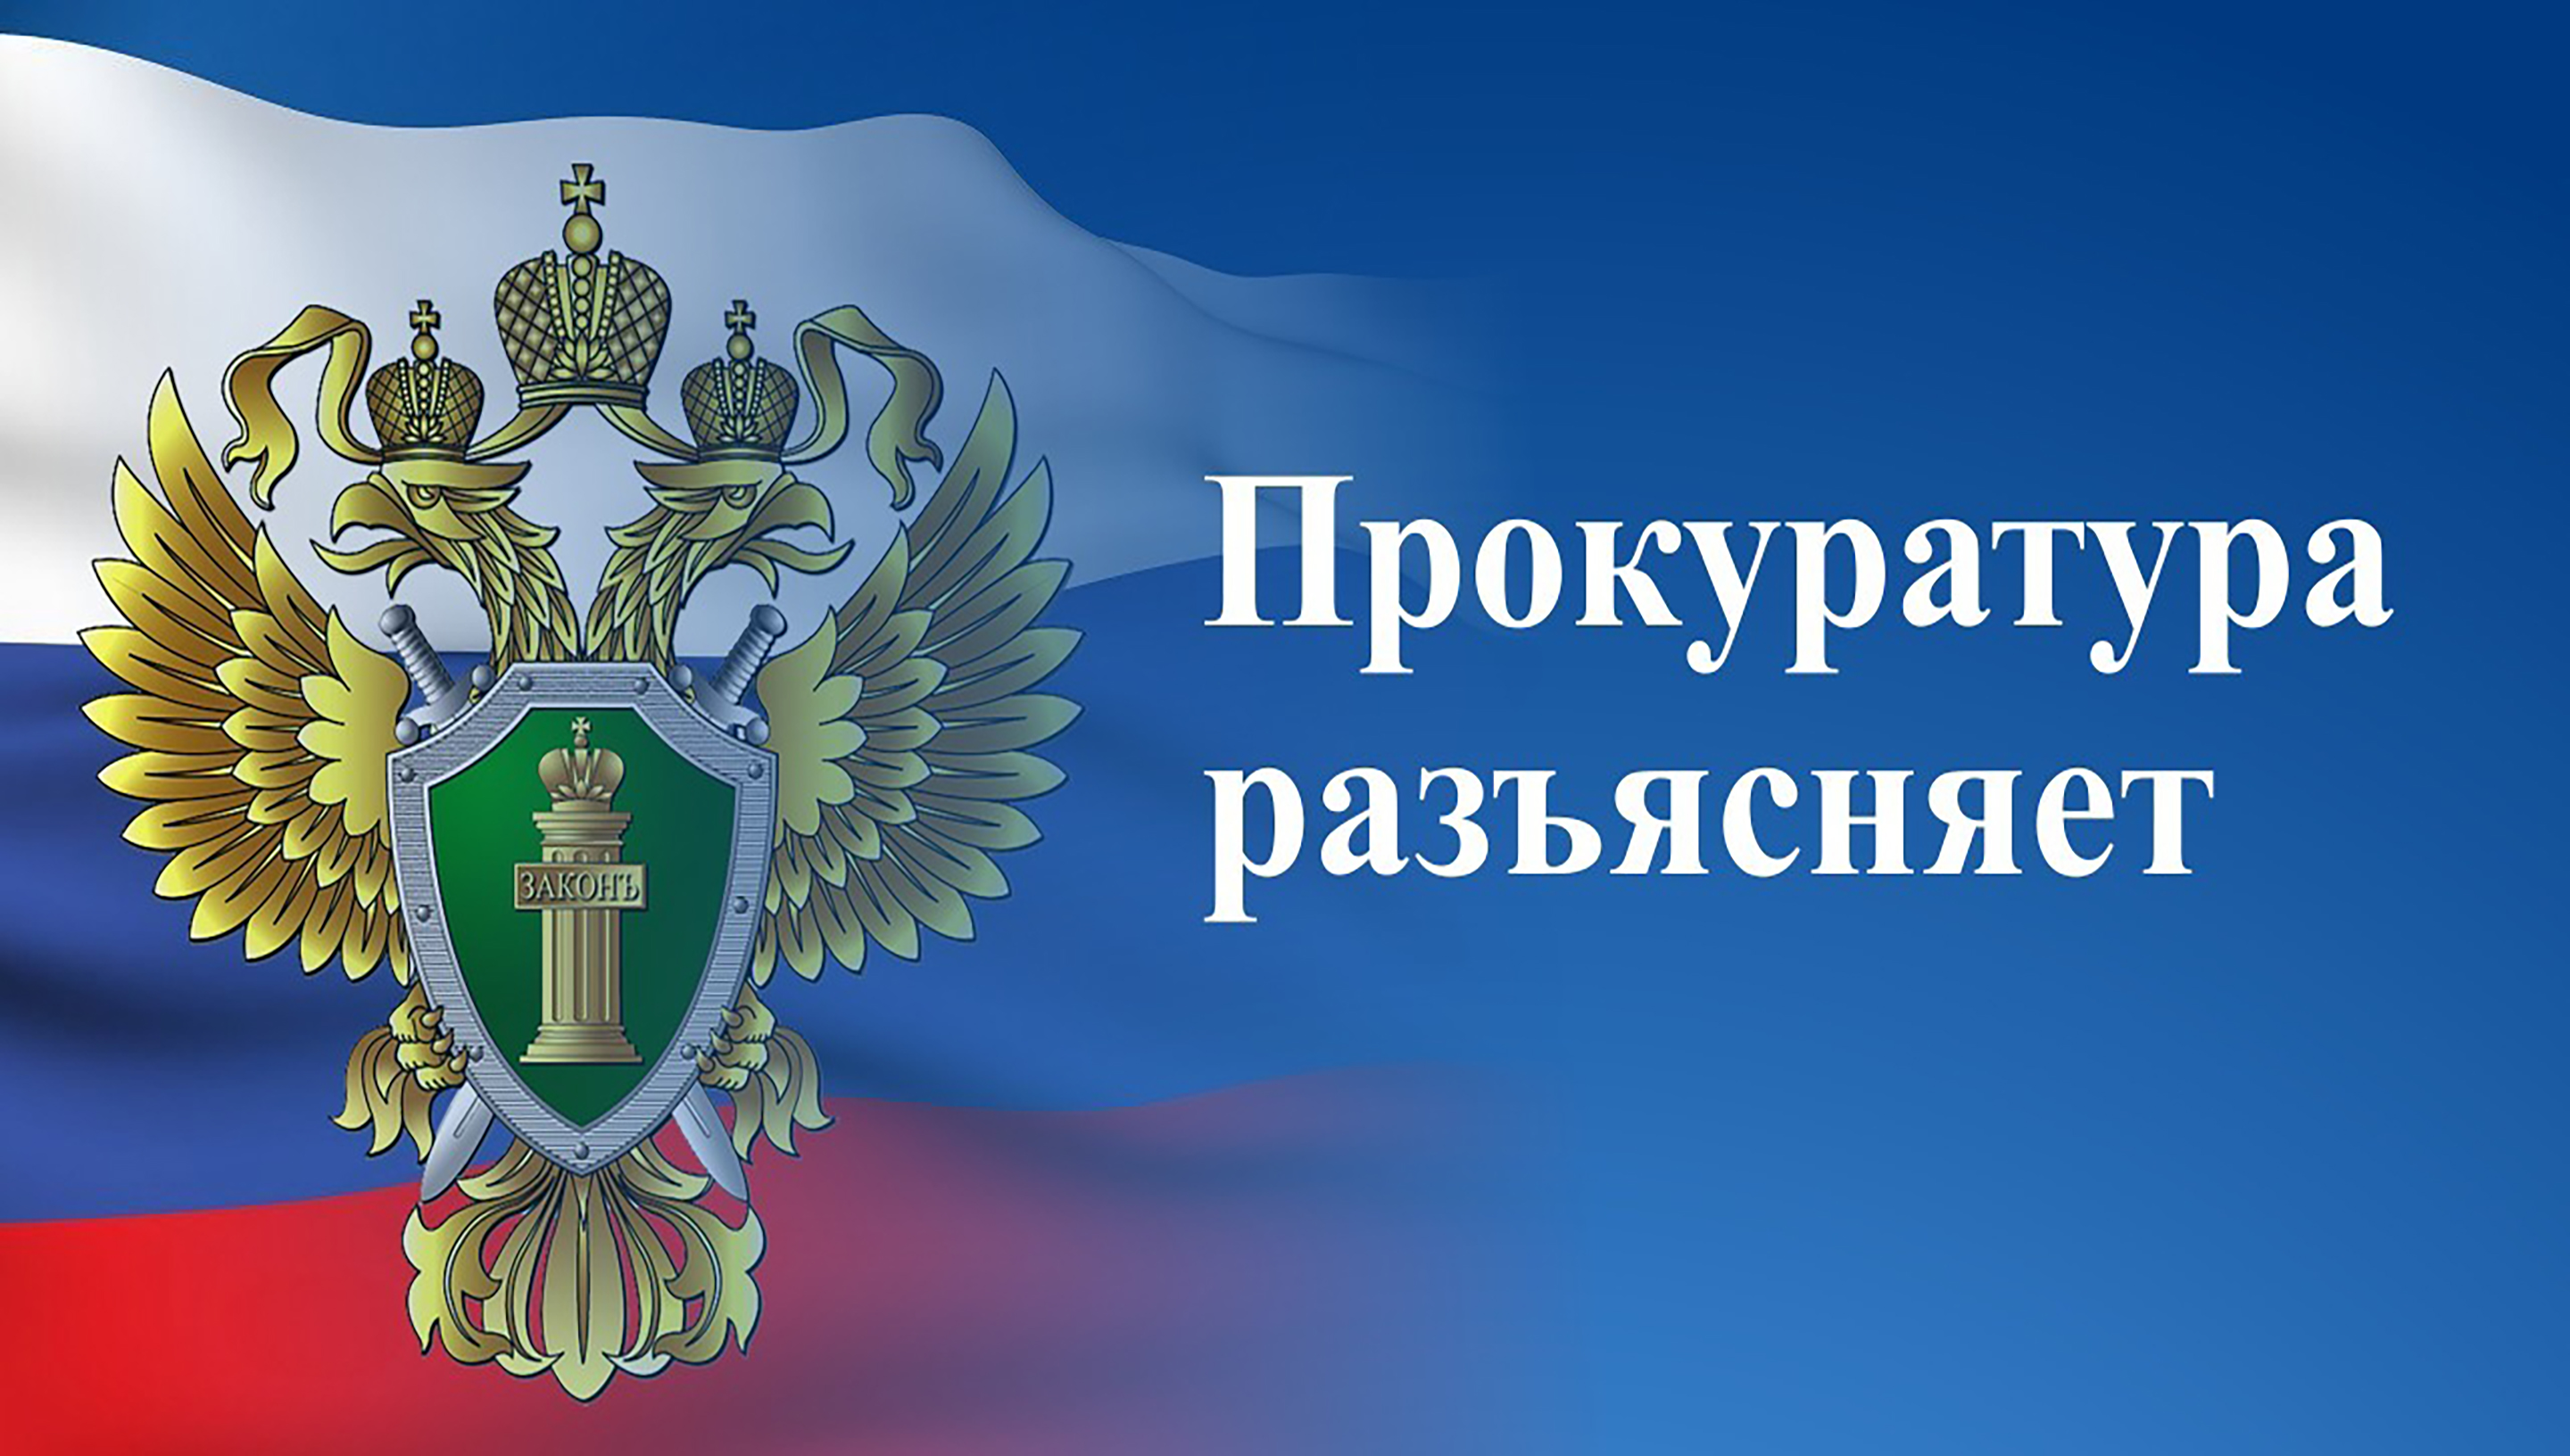 В Российской Федерации введена уголовная ответственность за нарушение требований к антитеррористической защищенности объектов (территорий).